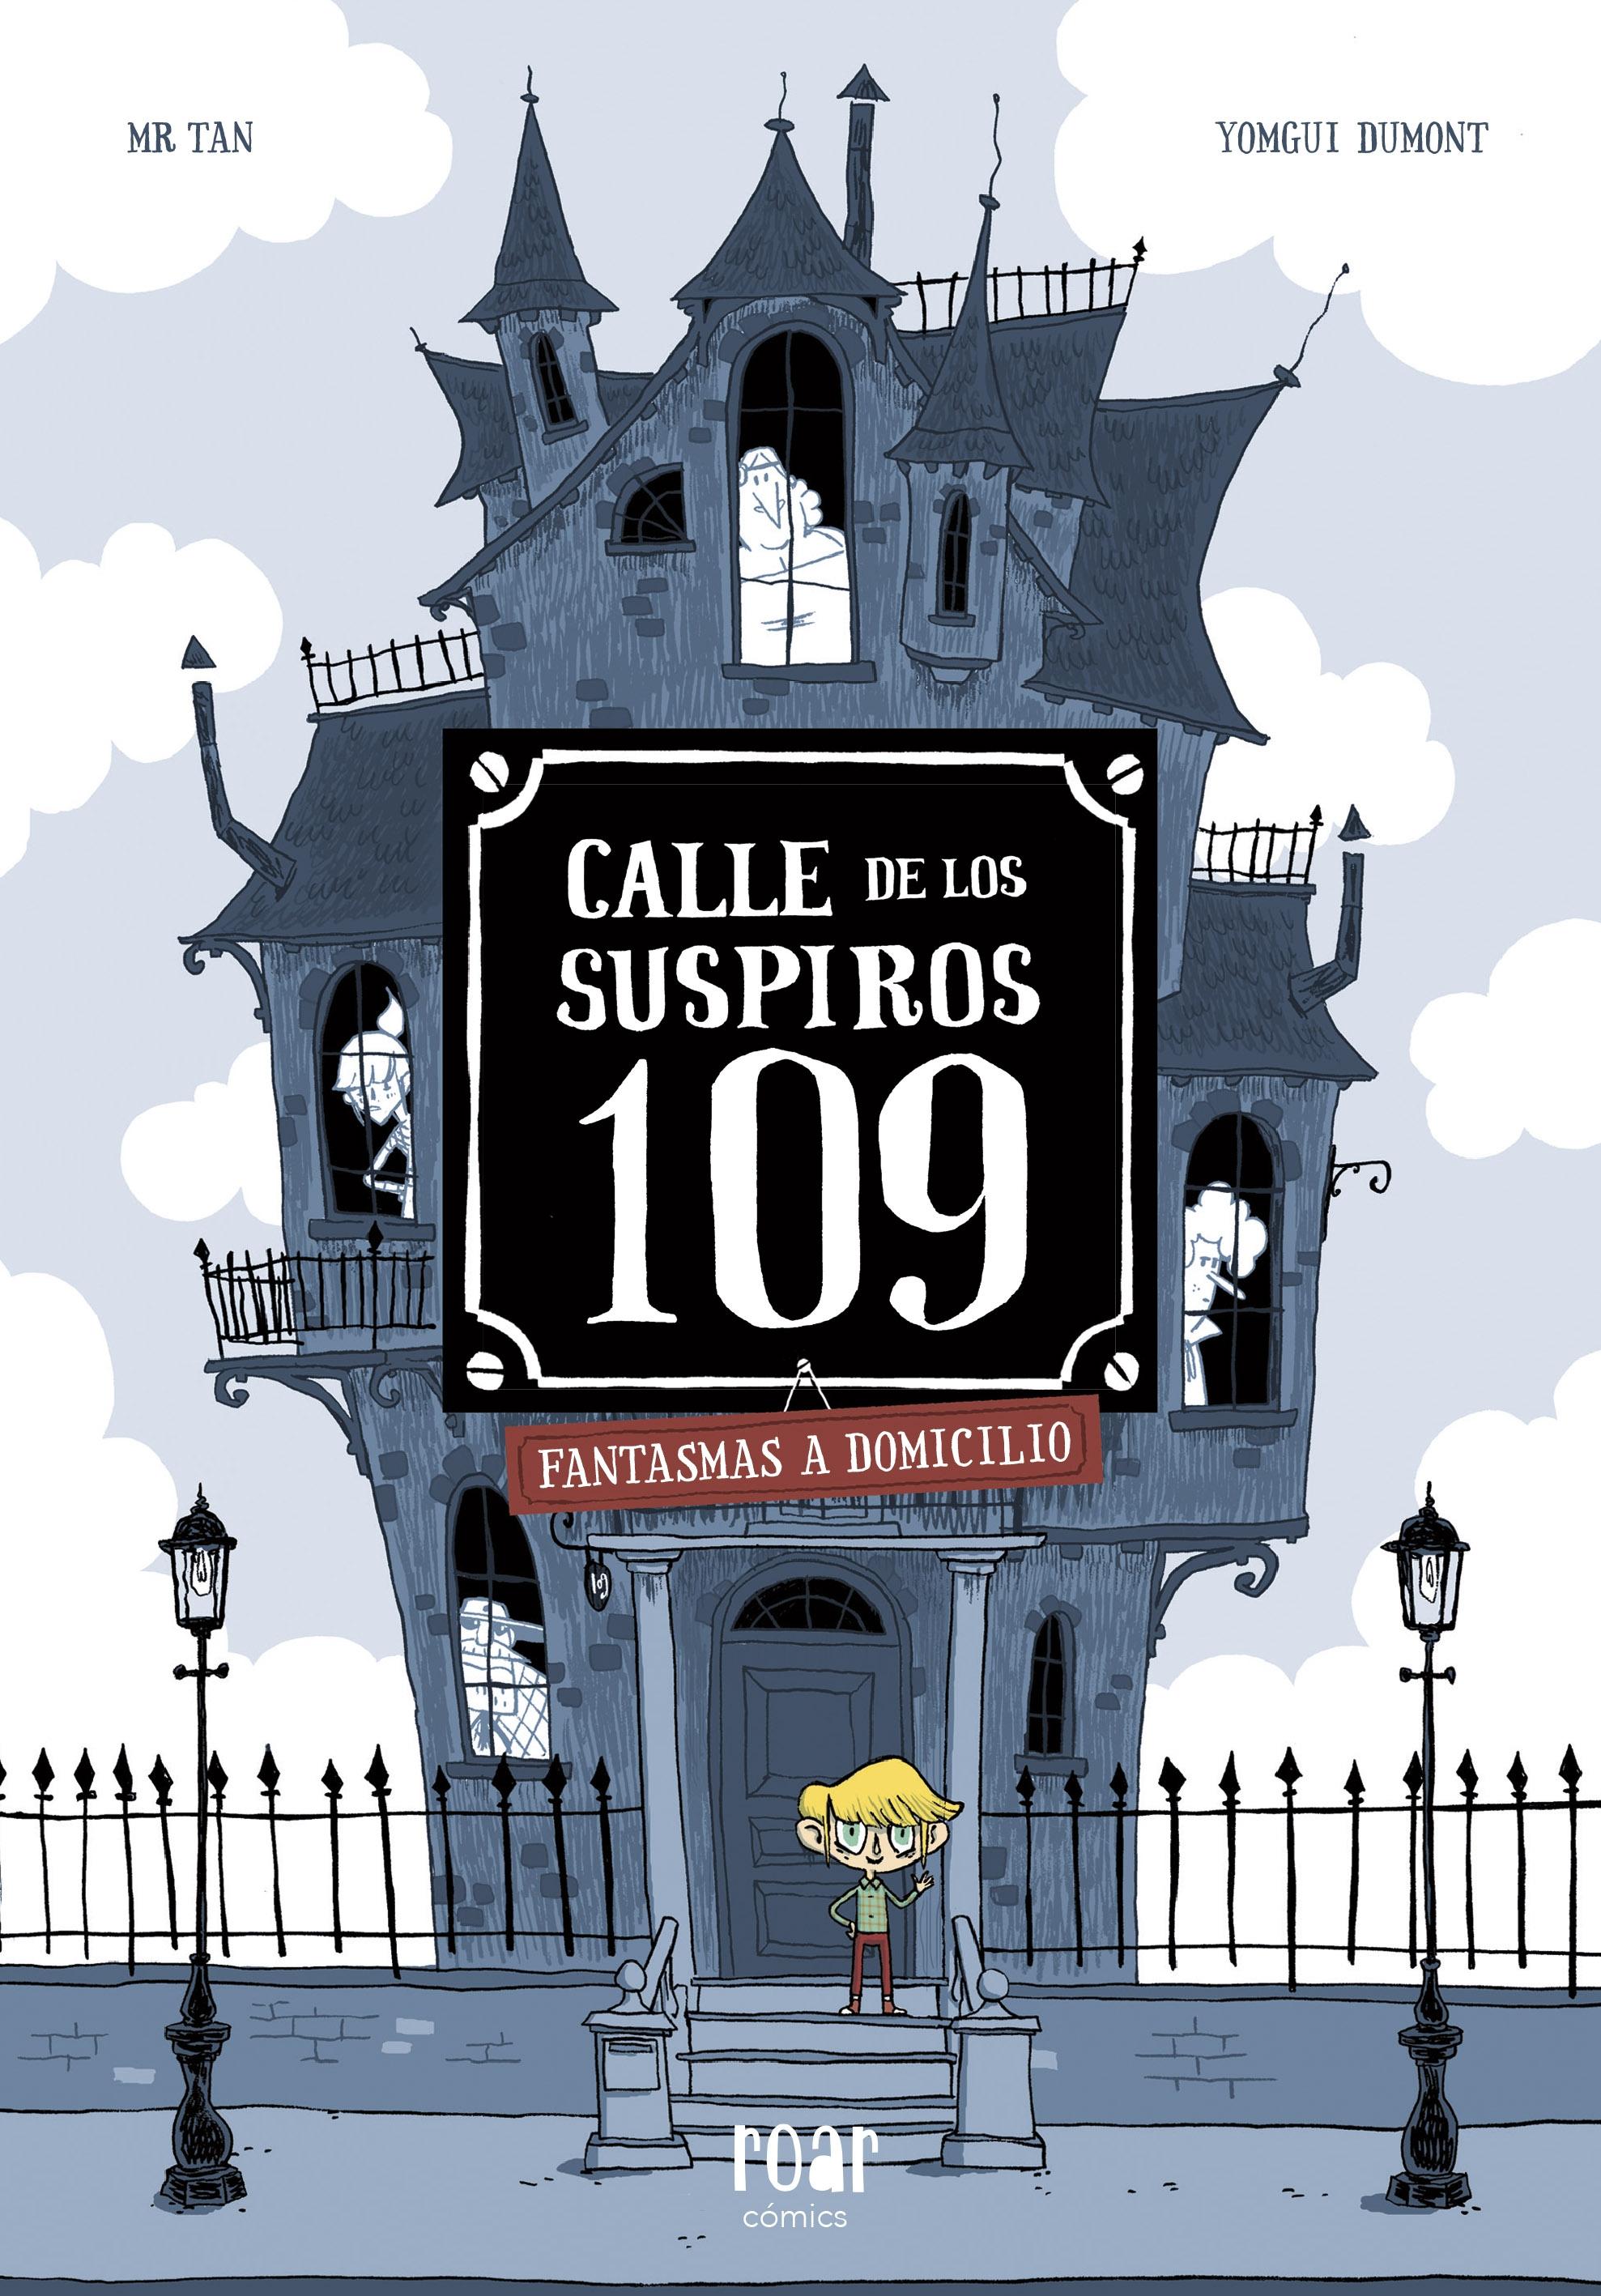 Calle de los Suspiros 109 "Fantasmas a domicilio". 